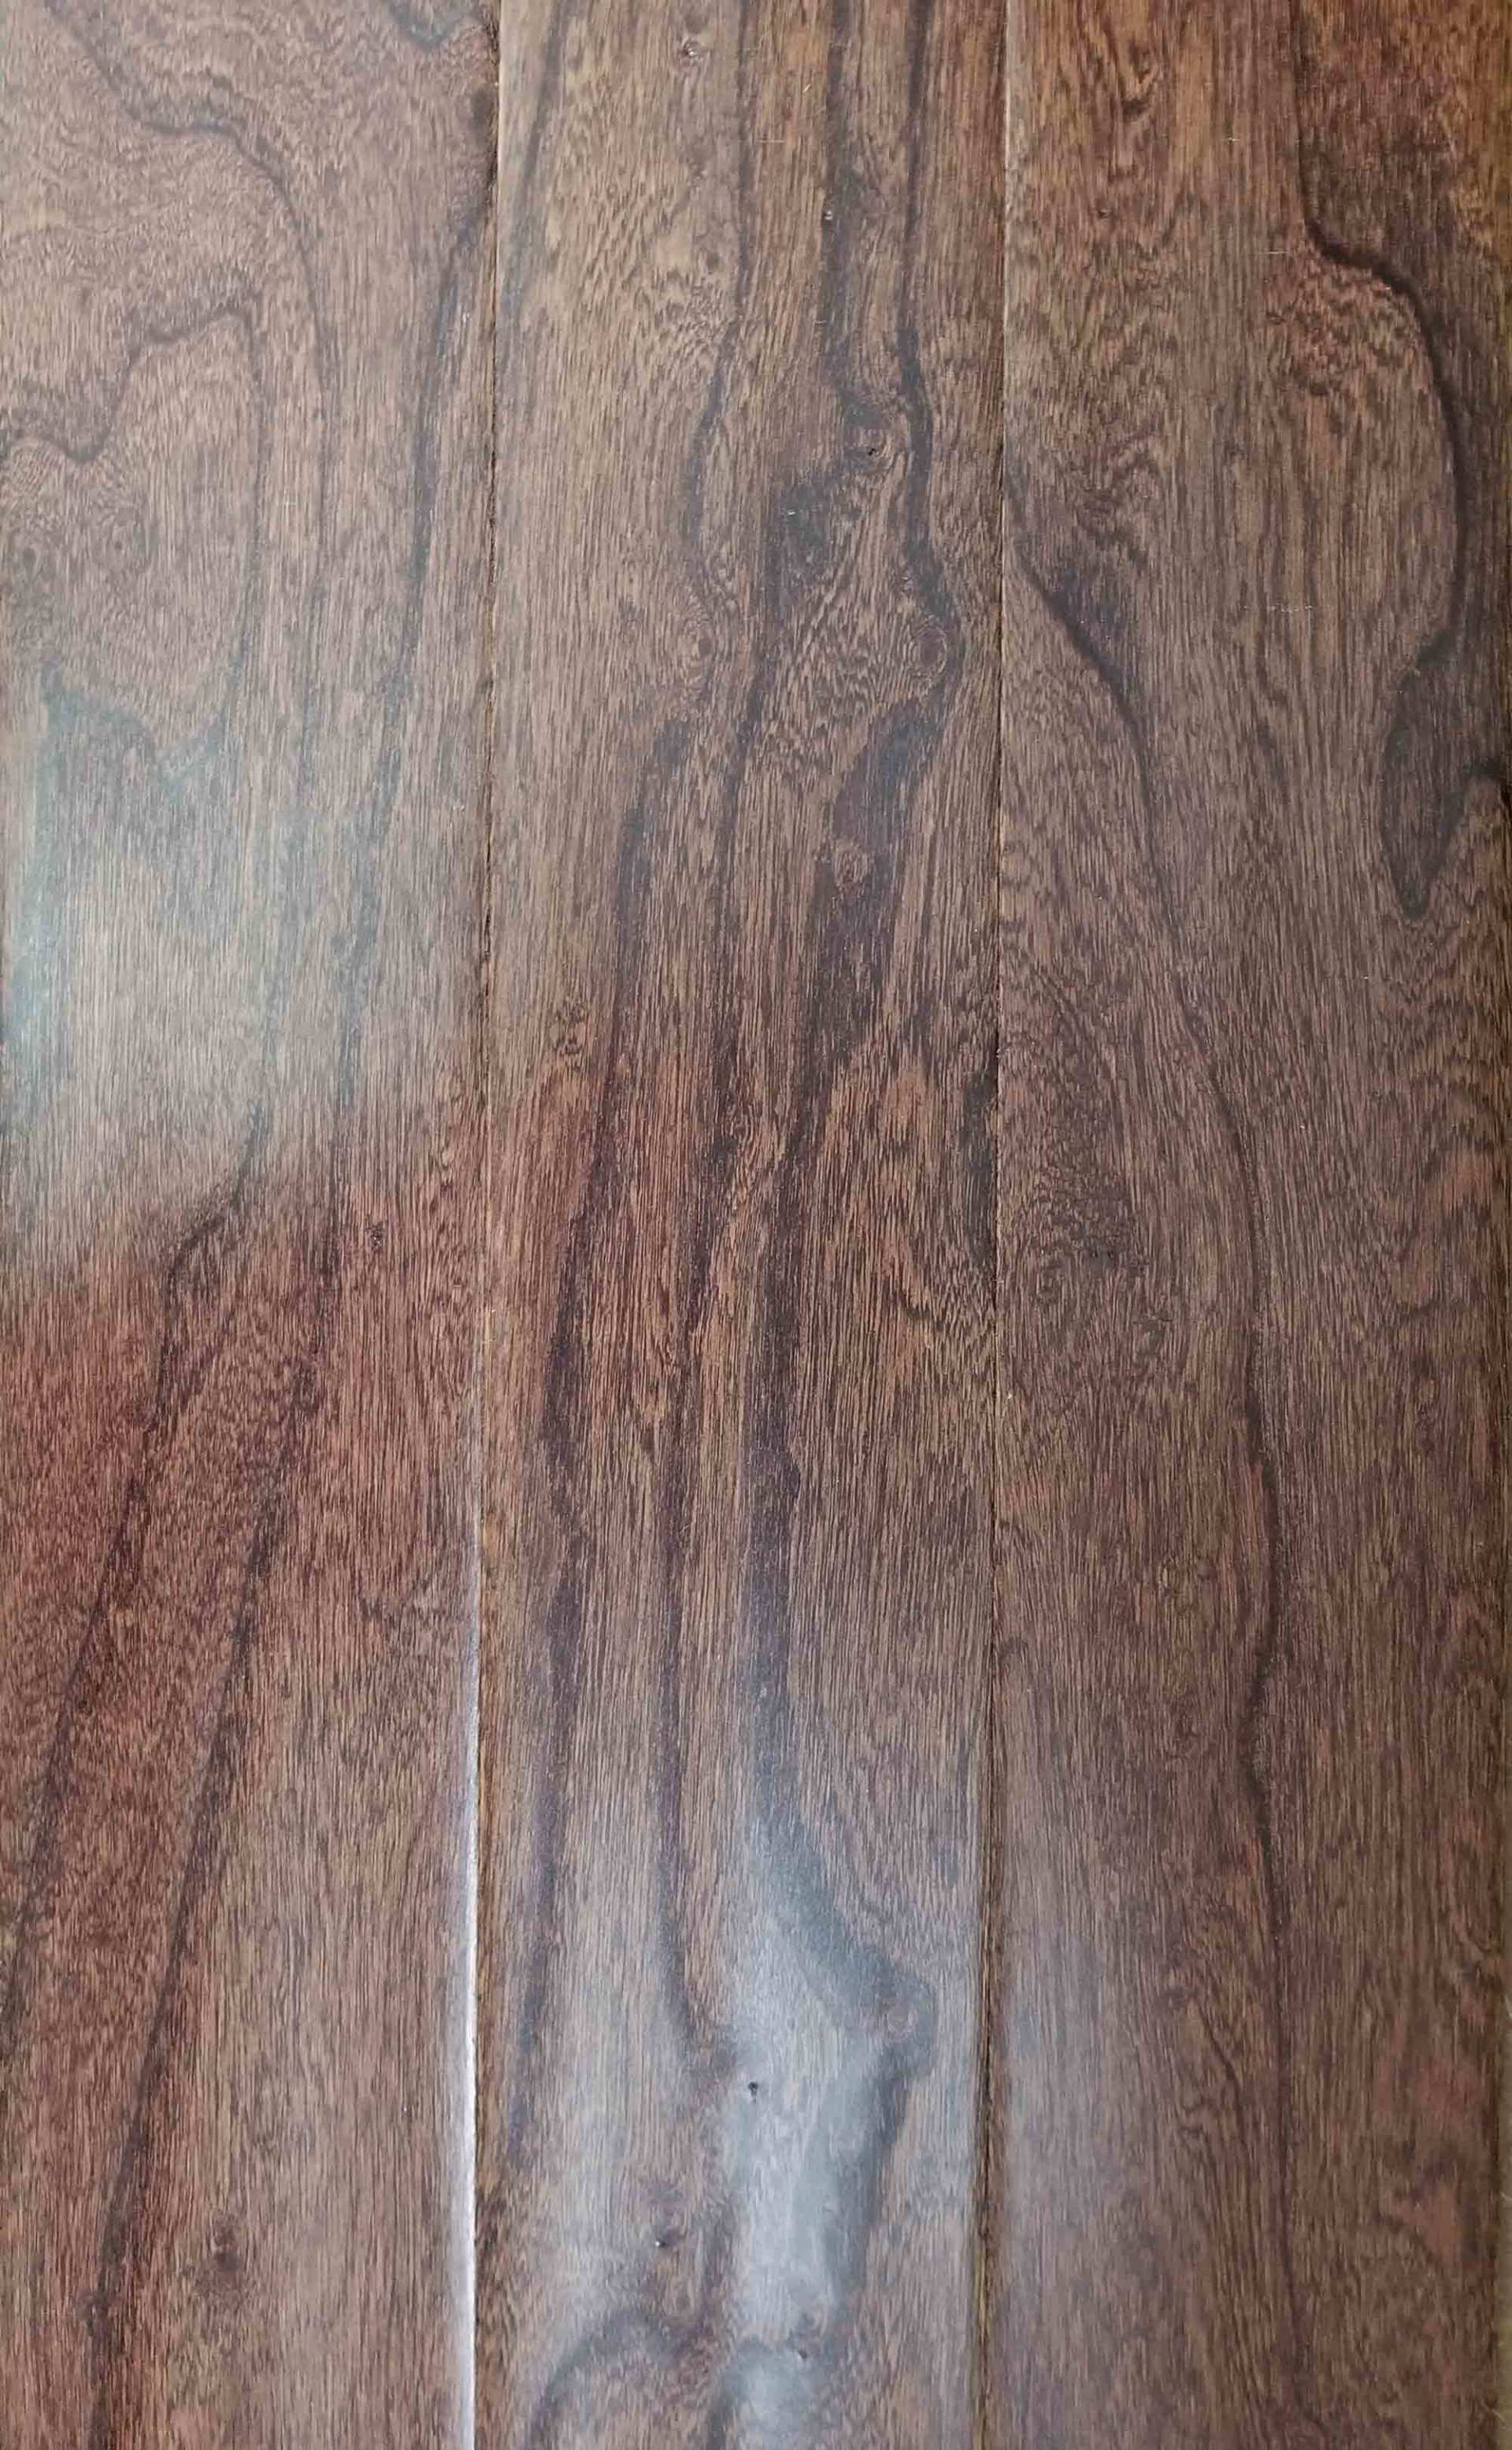 Wood Look Vinyl Plank and Granite Tile — Hardwood Floor With SKU Number DH308 in Saint Petersburg, FL